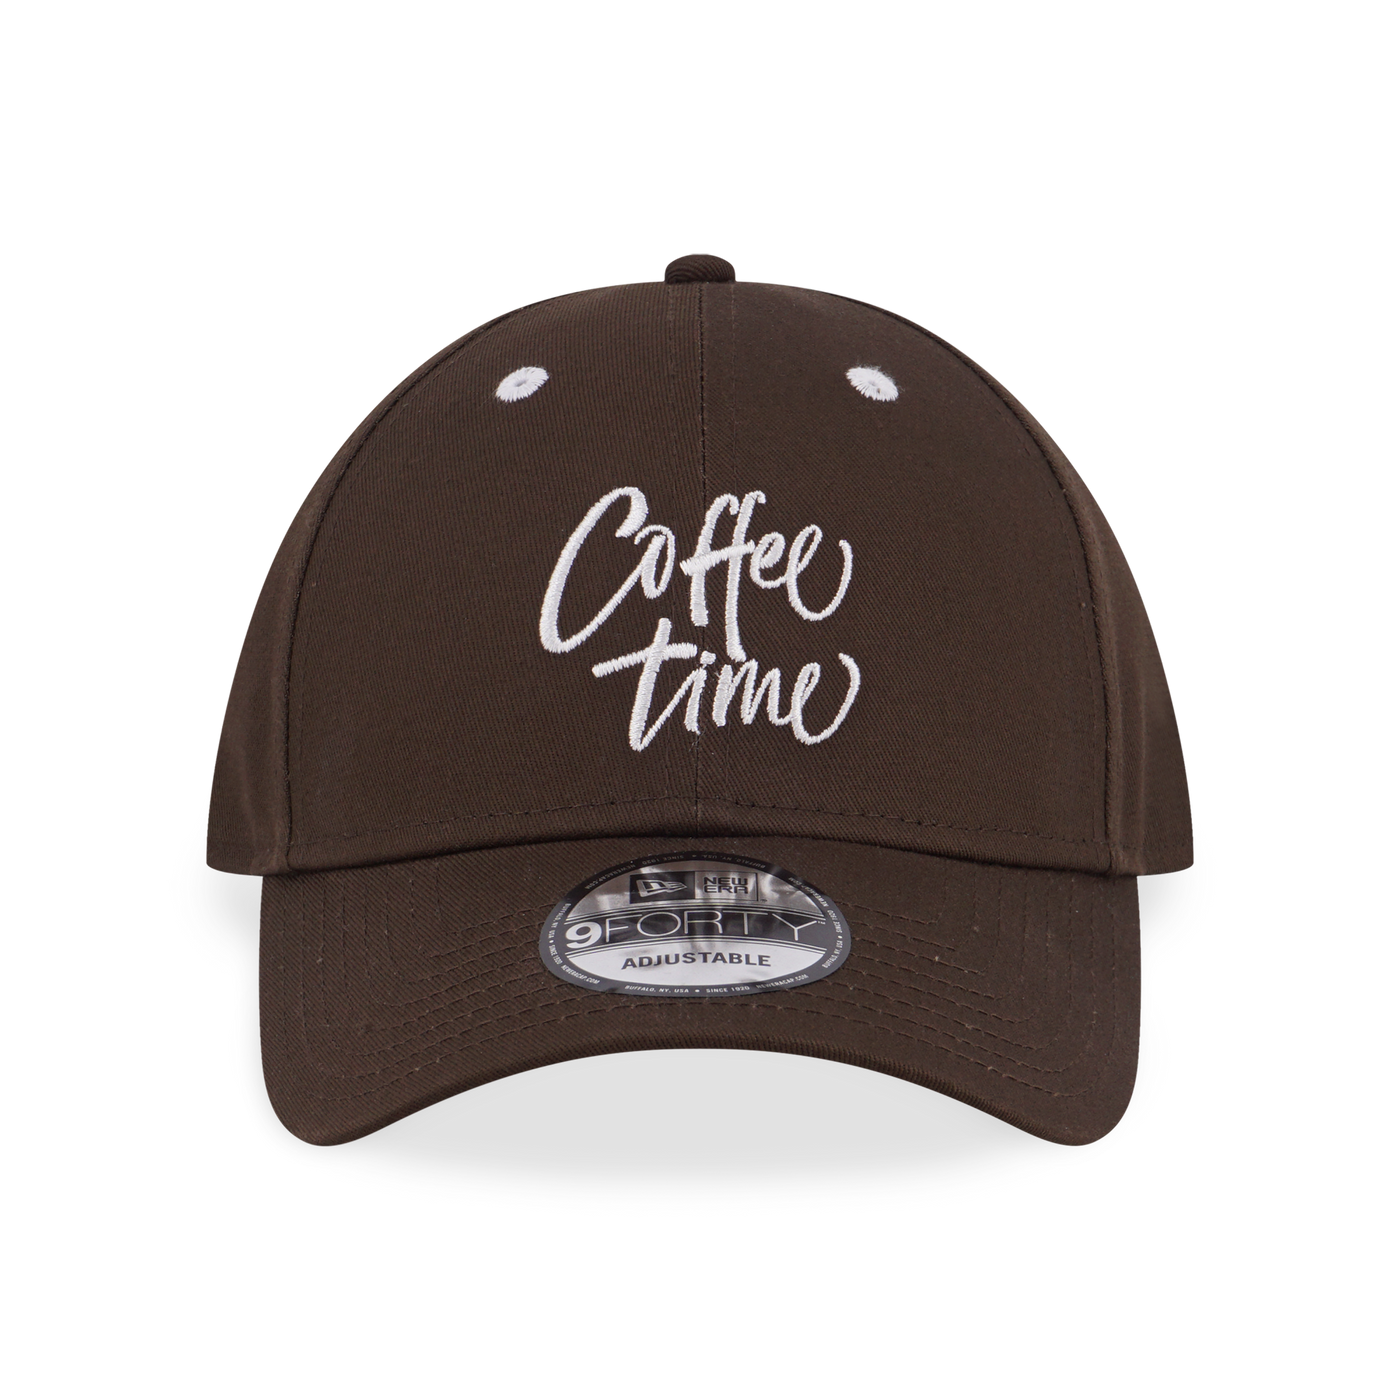 NEW ERA MORNING CLUB-COFFEE WALNUT 9FORTY CAP